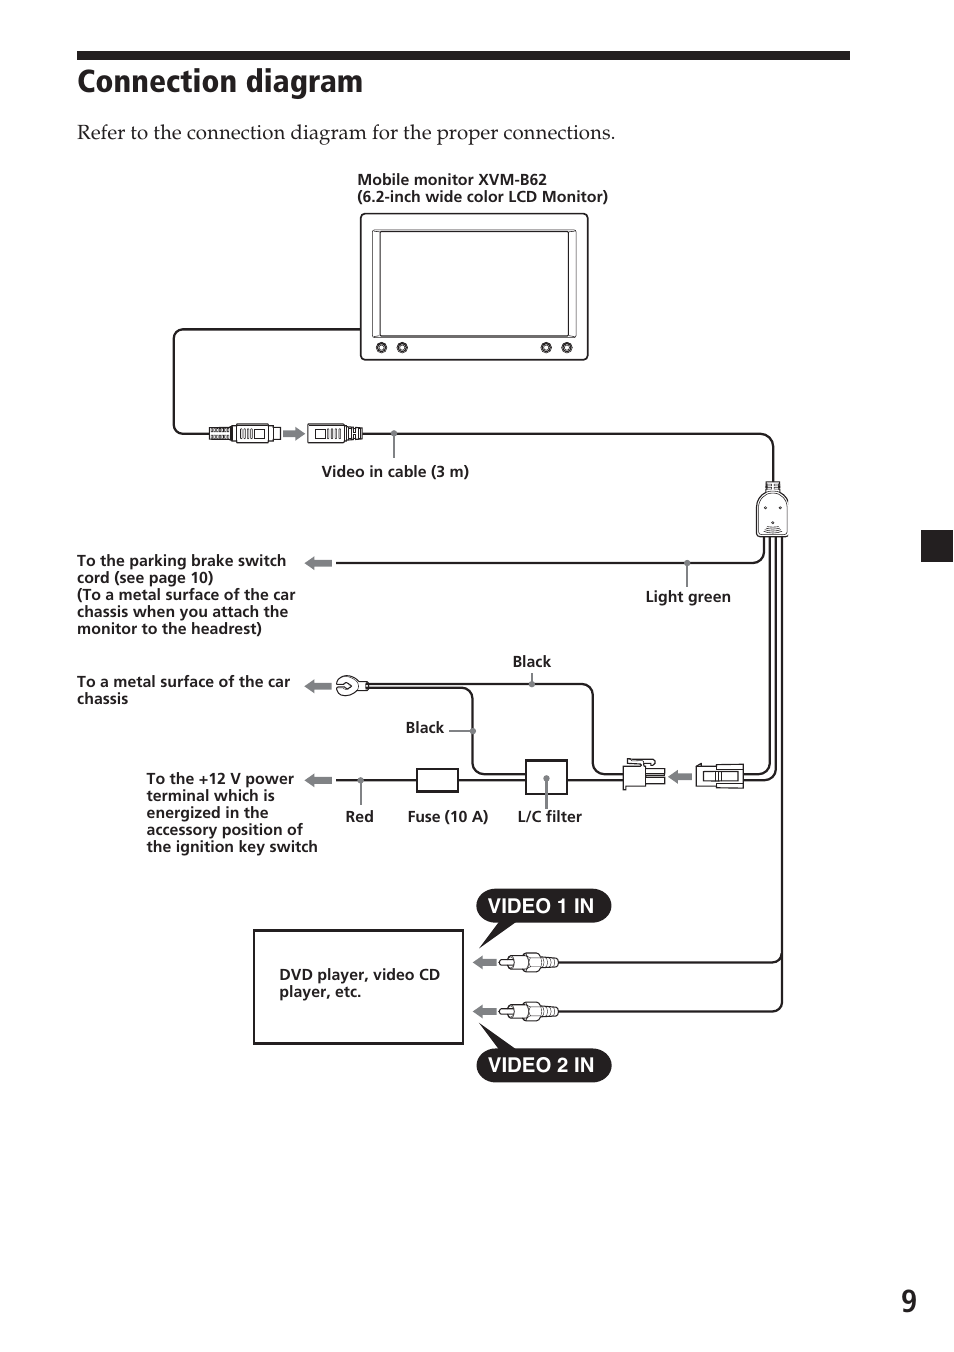 Connection diagram | Sony XVM-B62 Manuel d'utilisation | Page 9 / 28